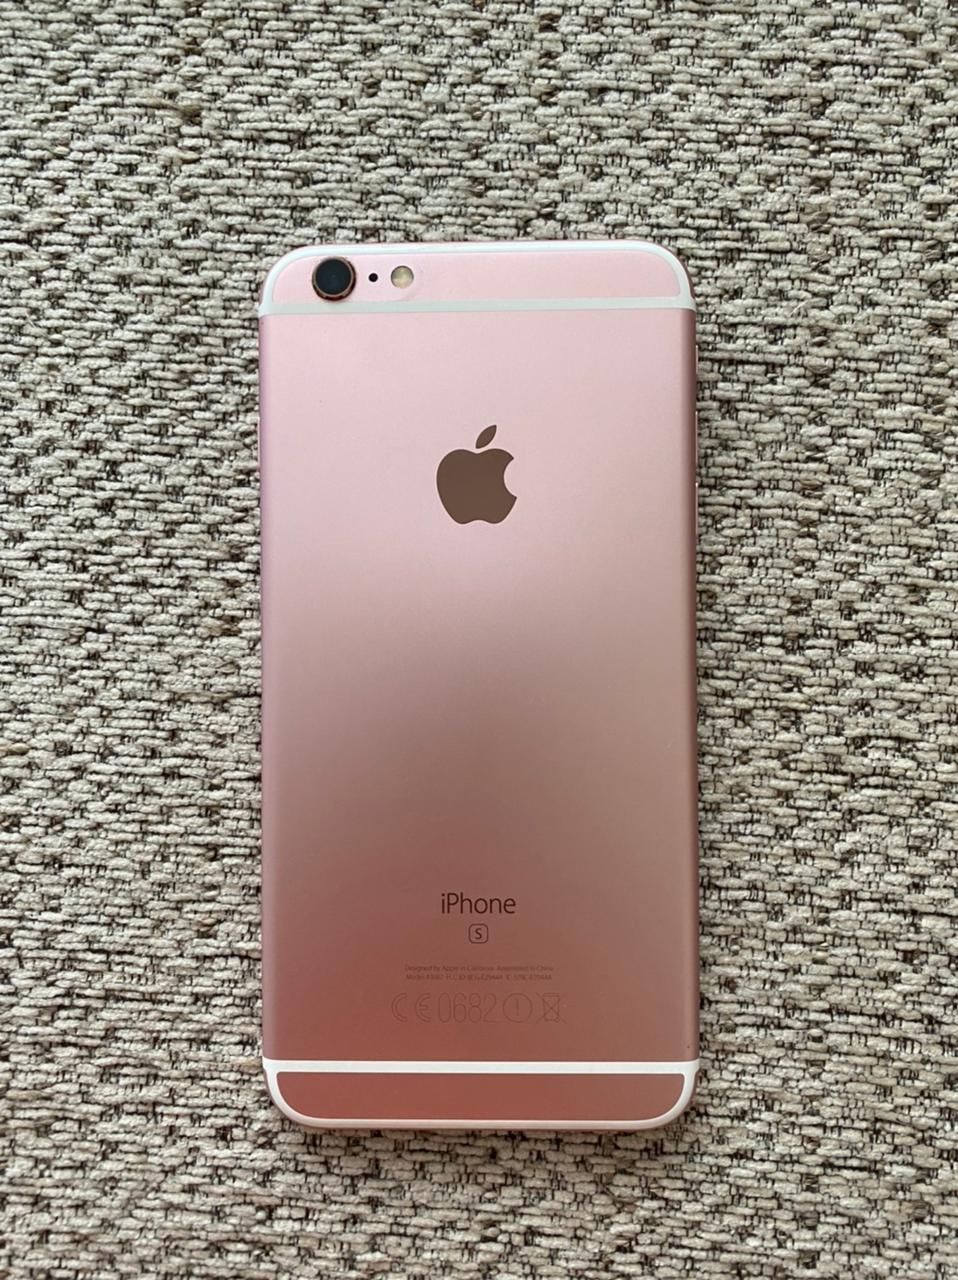 iPhone 6s Plus 16 GB Rose Gold